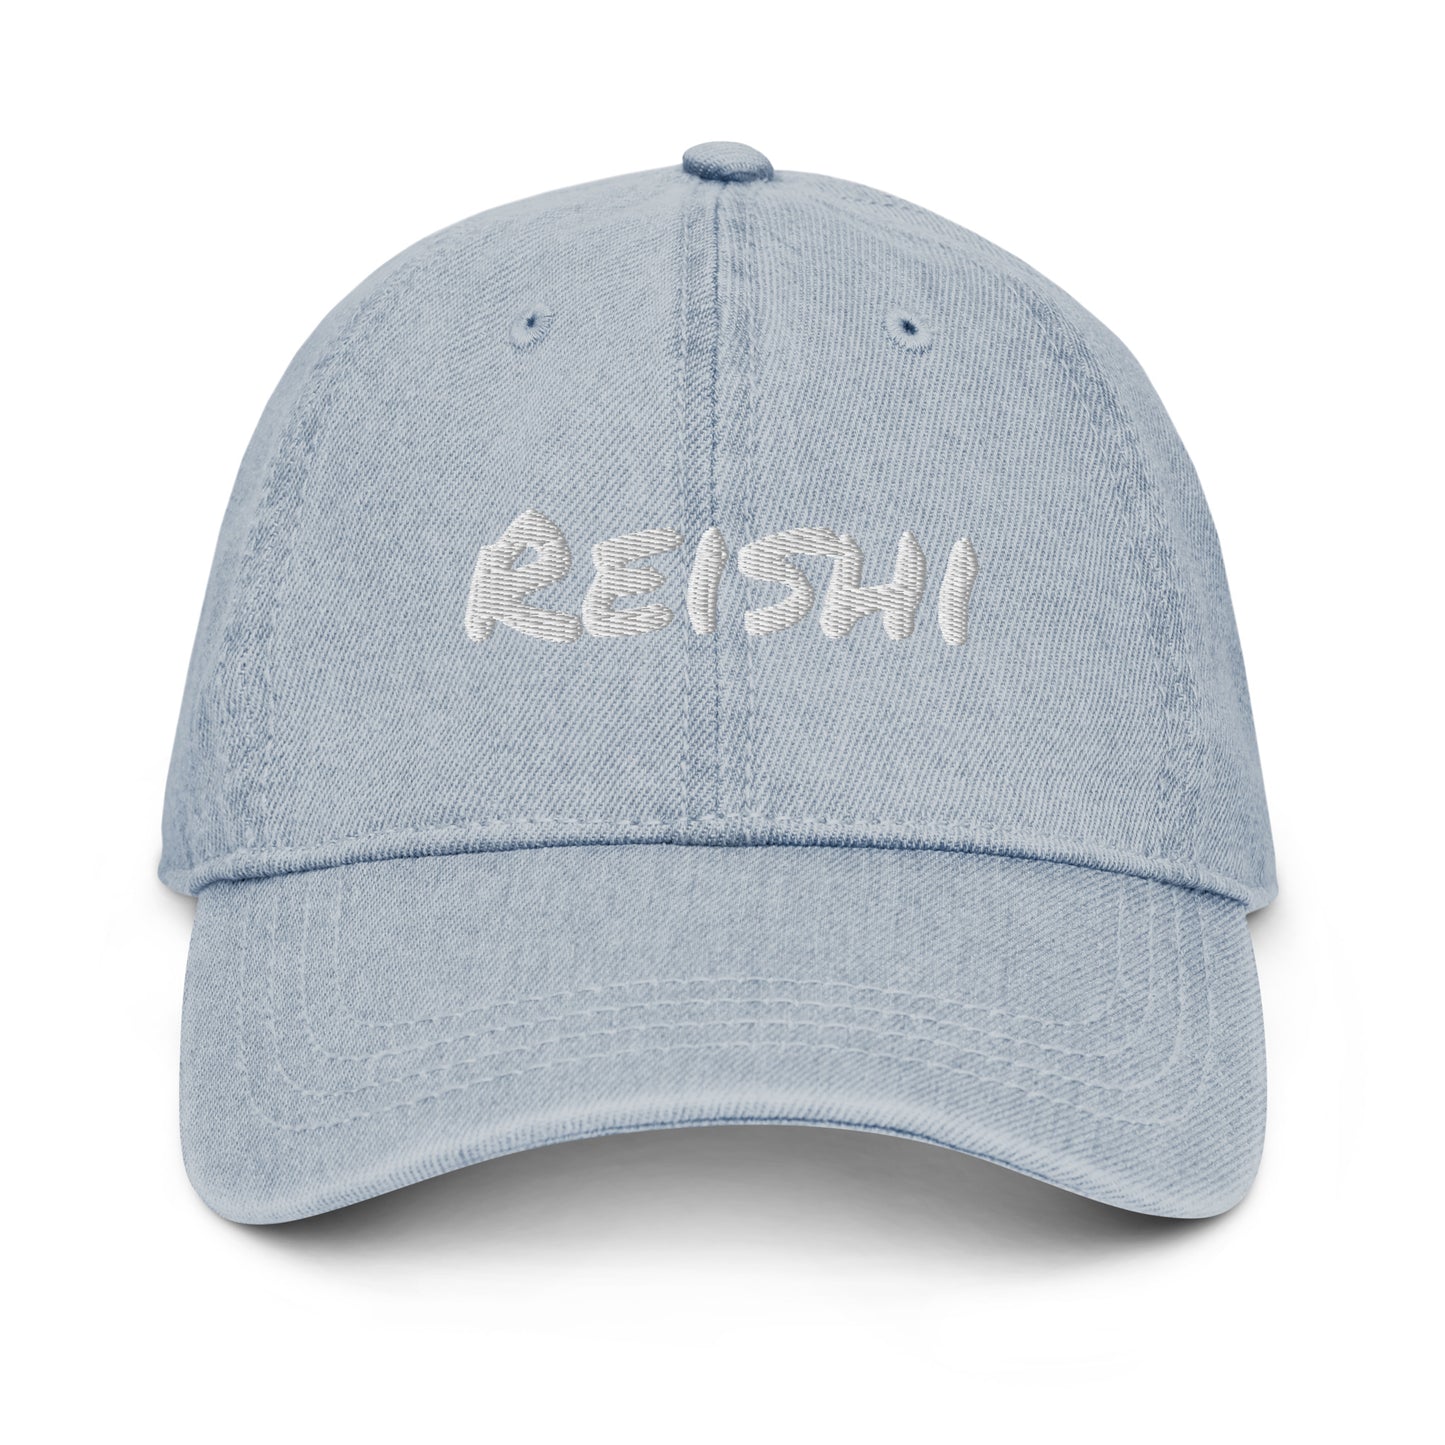 The Reishi Denim Cap